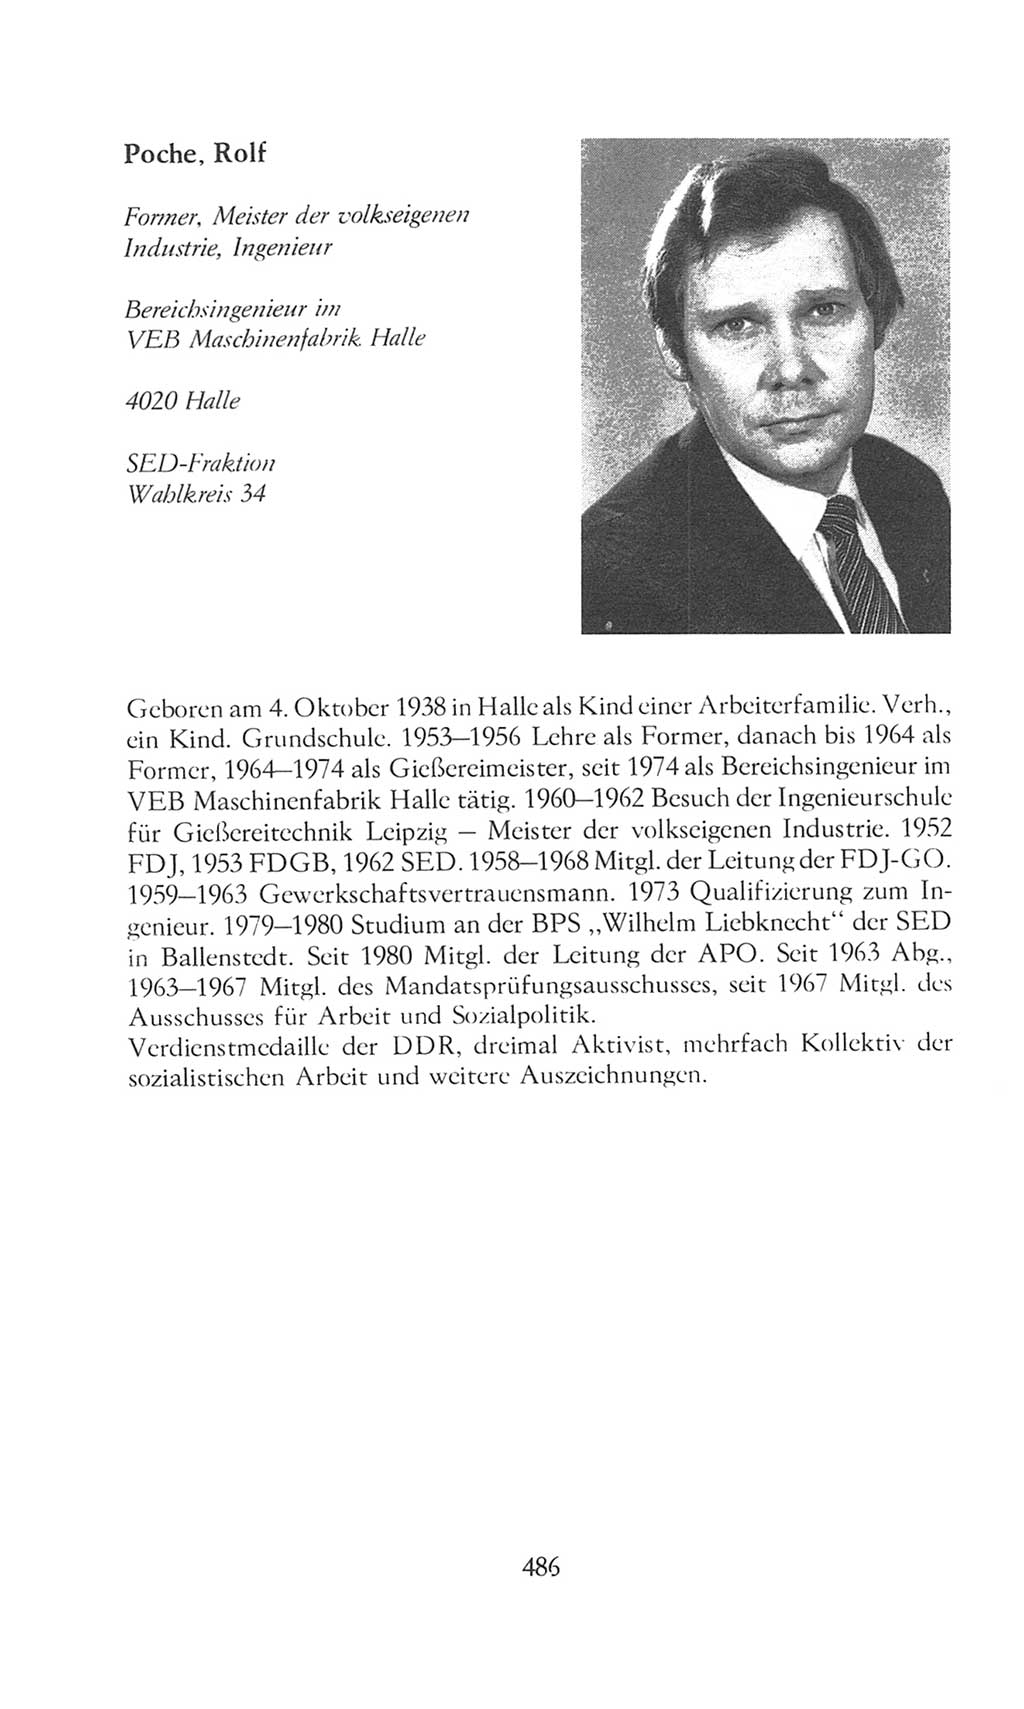 Volkskammer (VK) der Deutschen Demokratischen Republik (DDR), 8. Wahlperiode 1981-1986, Seite 486 (VK. DDR 8. WP. 1981-1986, S. 486)